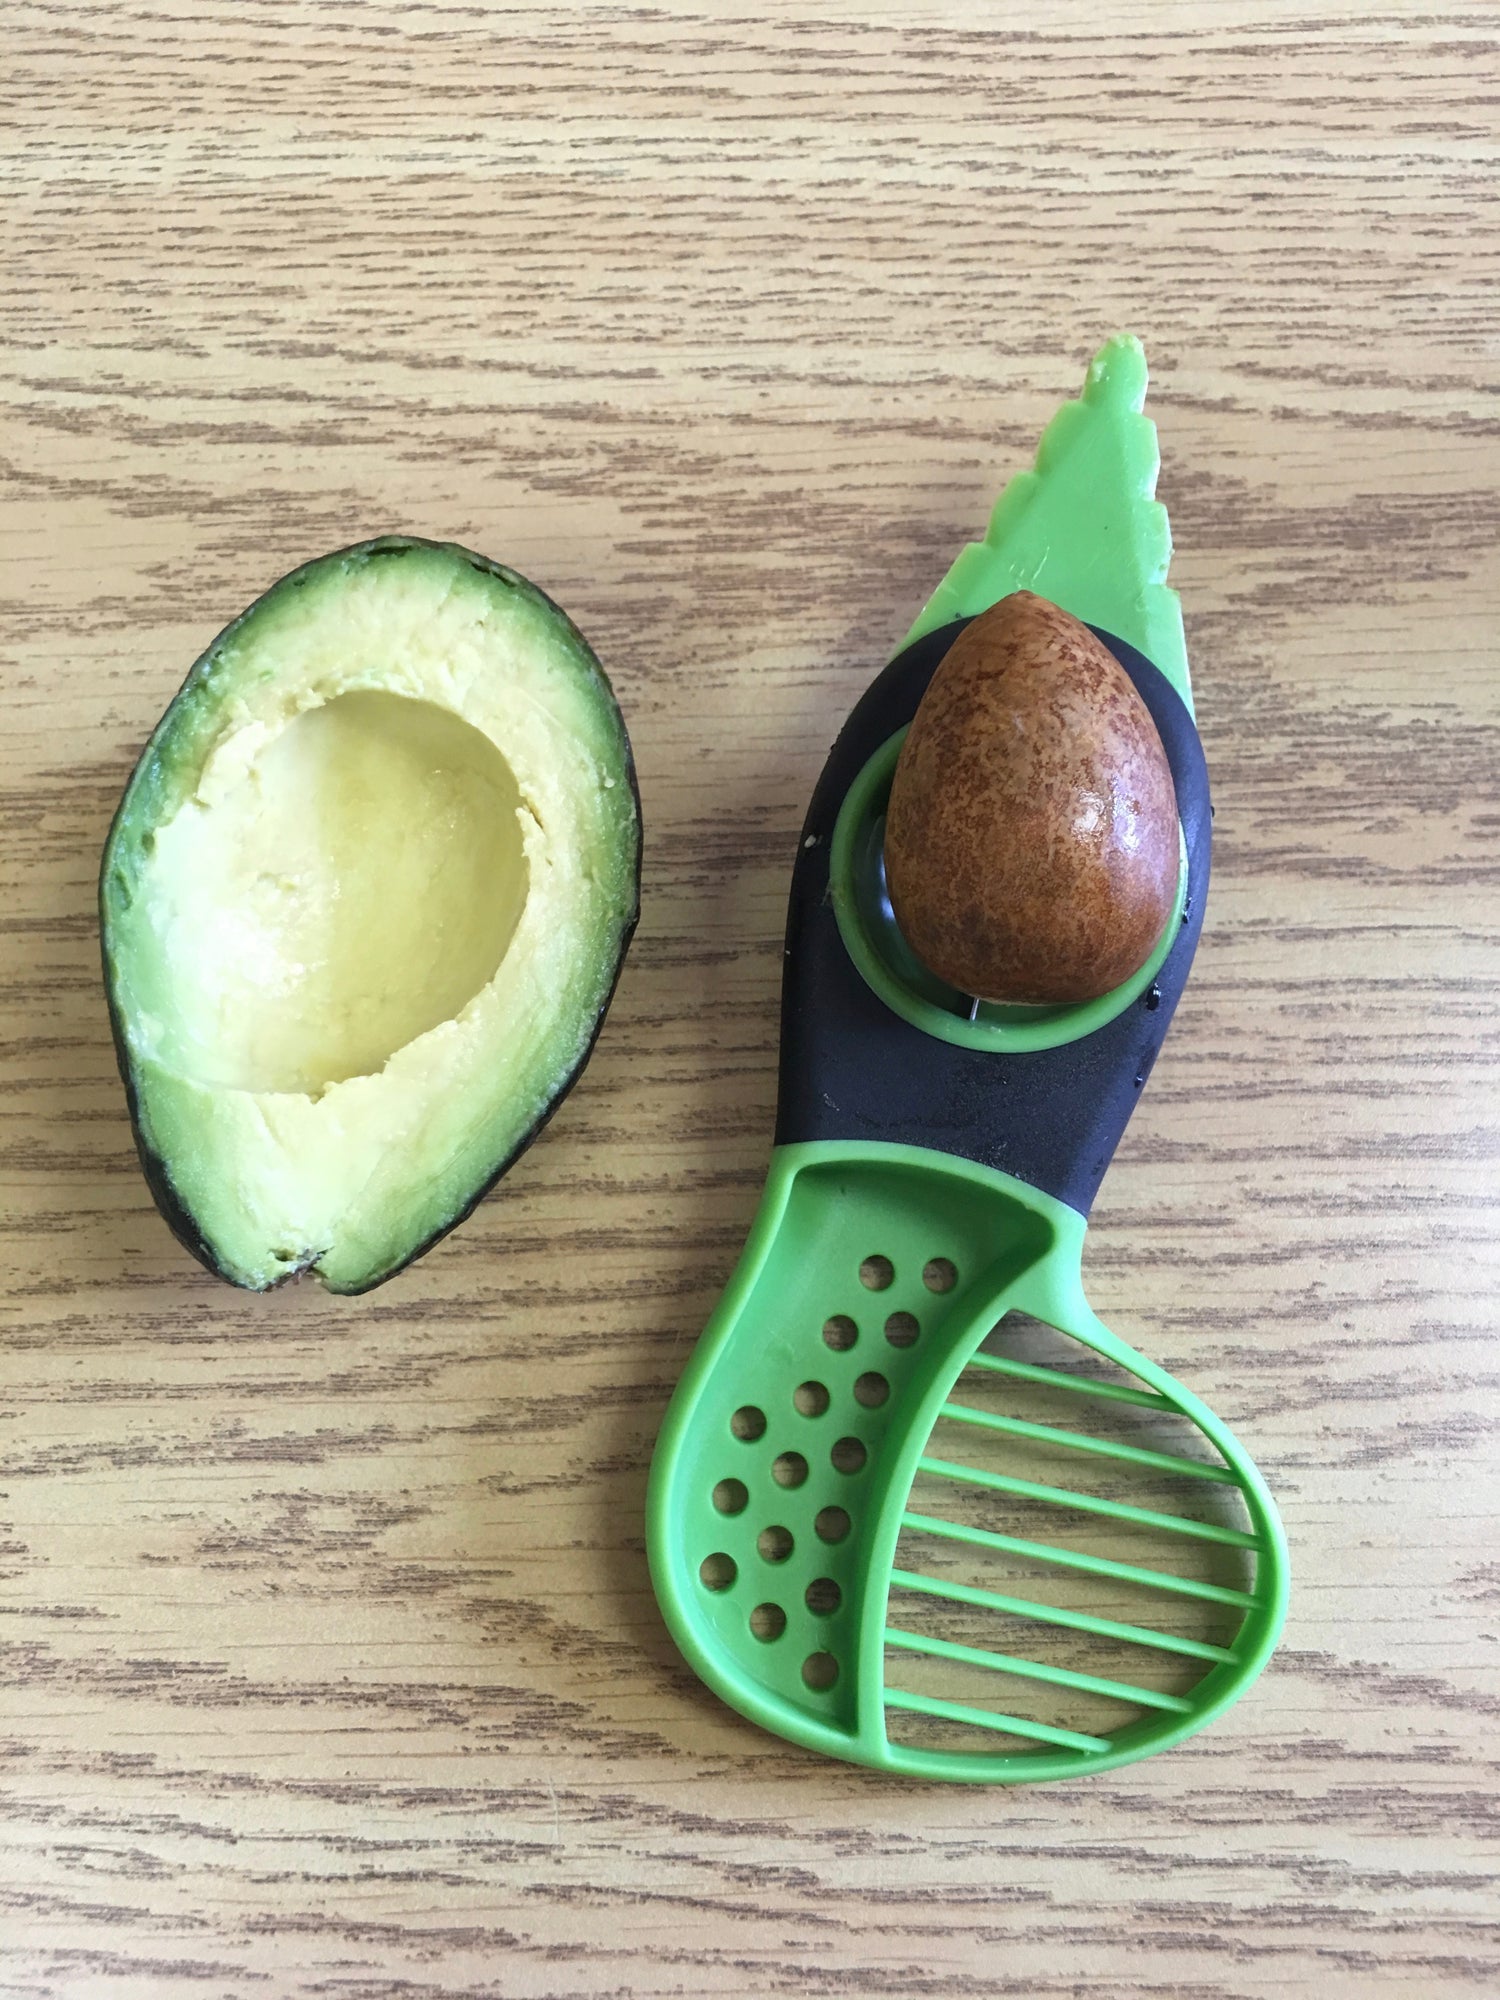 1 OXO Good Grips 3-in-1 Avocado Slicer Split, Pit & Slice avocado tool